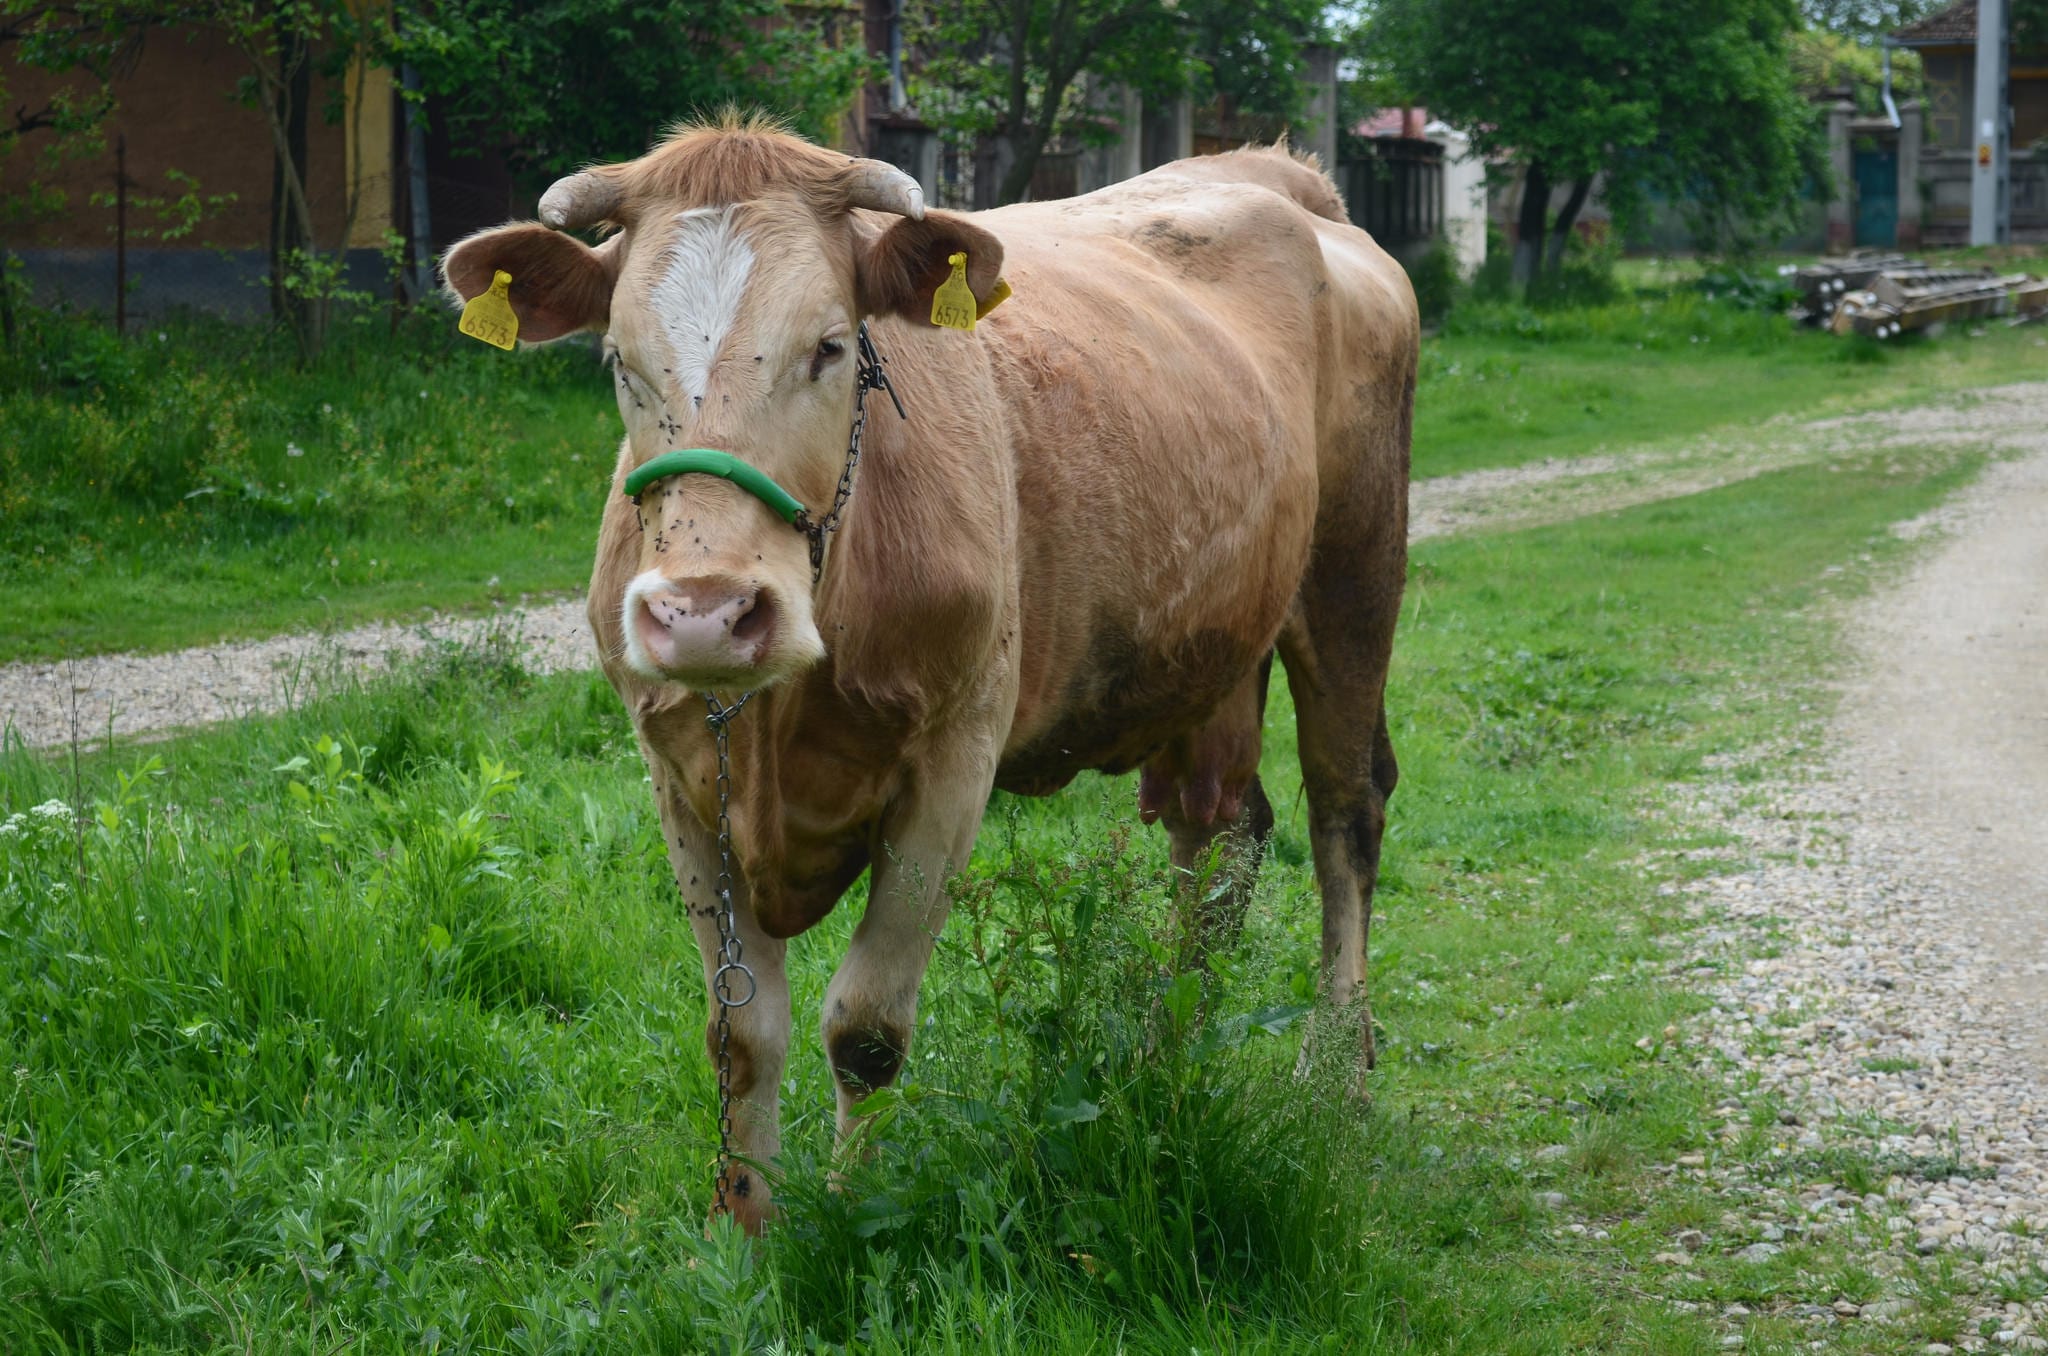 O imagine comună la sate: animale in lanțuri, neingrijite, murdare, tratate ca simple obiecte. Această vacă își petrece întreaga zi în lanțuri, a fost separată de puiul ei care a fost trimis la abator, unde va fi și ea trimisă când producția de lapte îi va scădea.